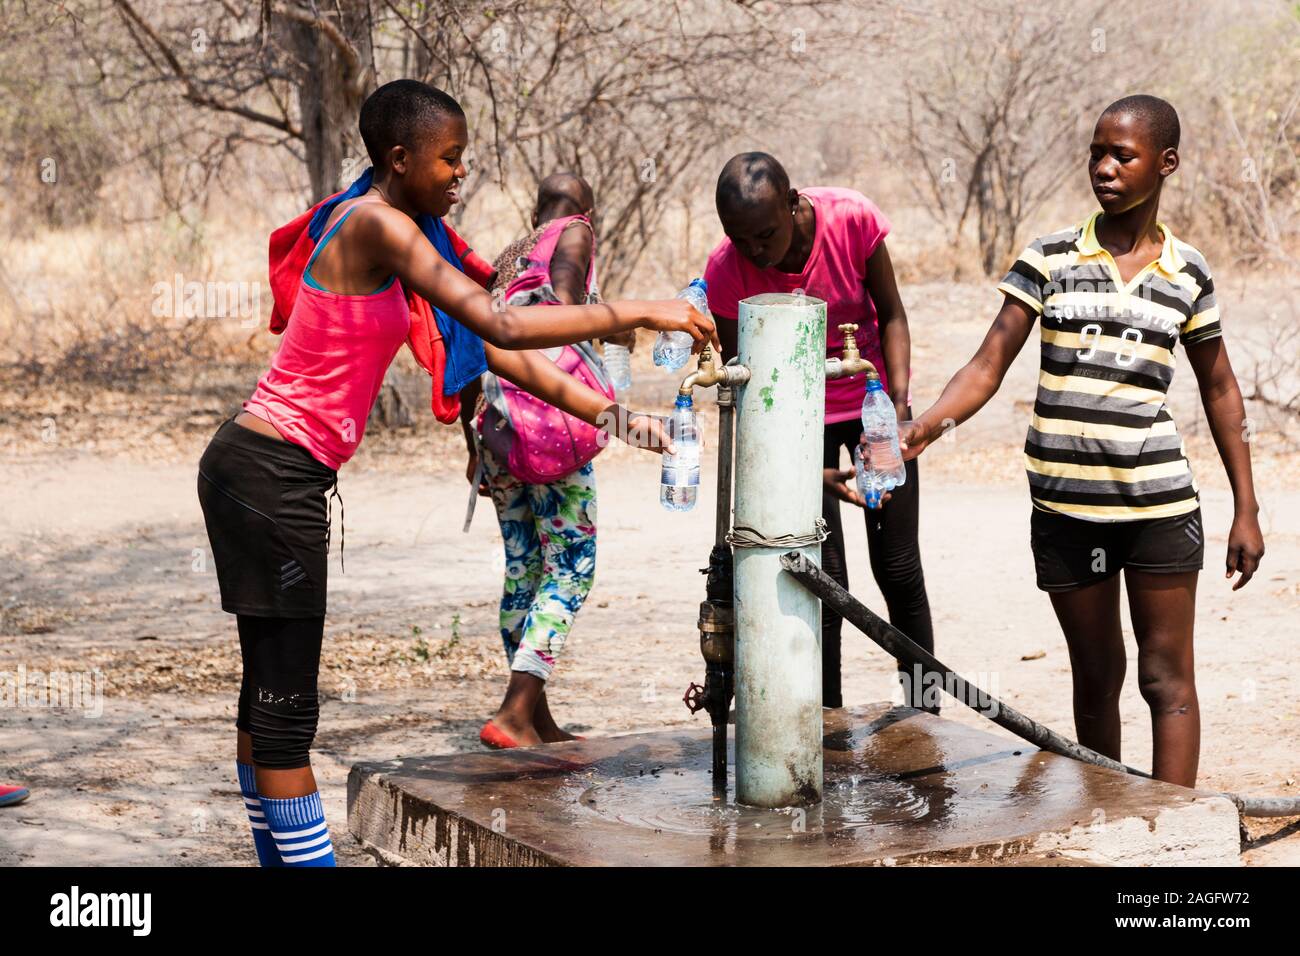 Sites d'art rupestre des collines de Tsodilo, étudiants locaux en visite, puits d'eau sur le site du camp, dans le désert de kalahari, Botswana, Afrique australe, Afrique Banque D'Images